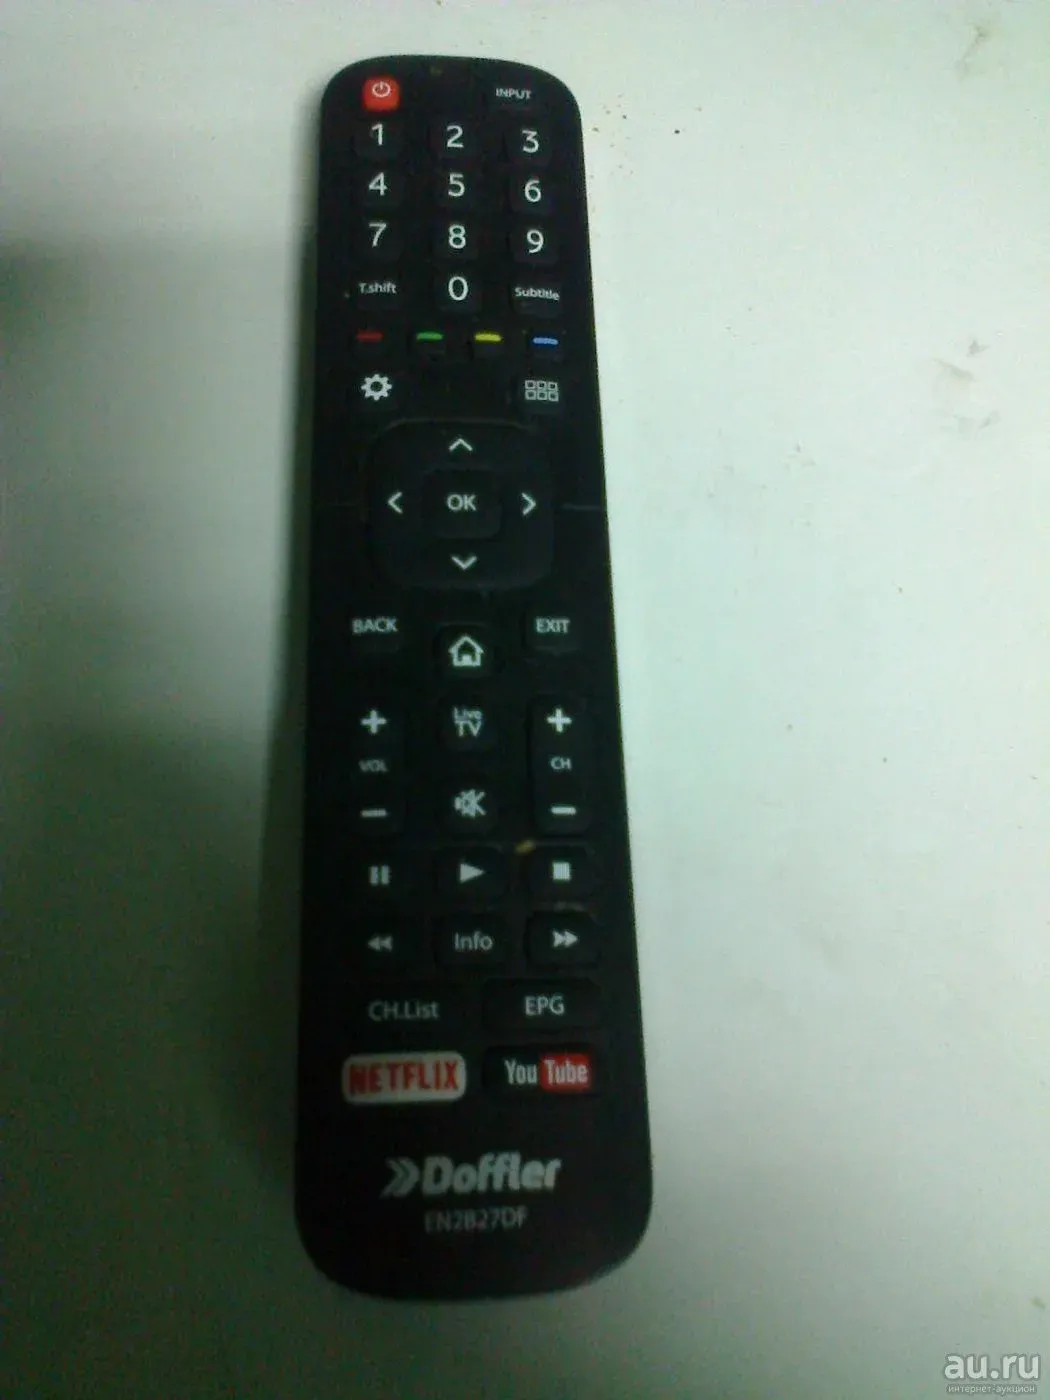 Пульт для телевизора doffler. En2b27df пульт. Пульт для телевизора Doffler 40df49-t2. Пульт TV Doffler 43dfs55. Пульт Дофлер телевизора en2bb27d обозначение кнопок.